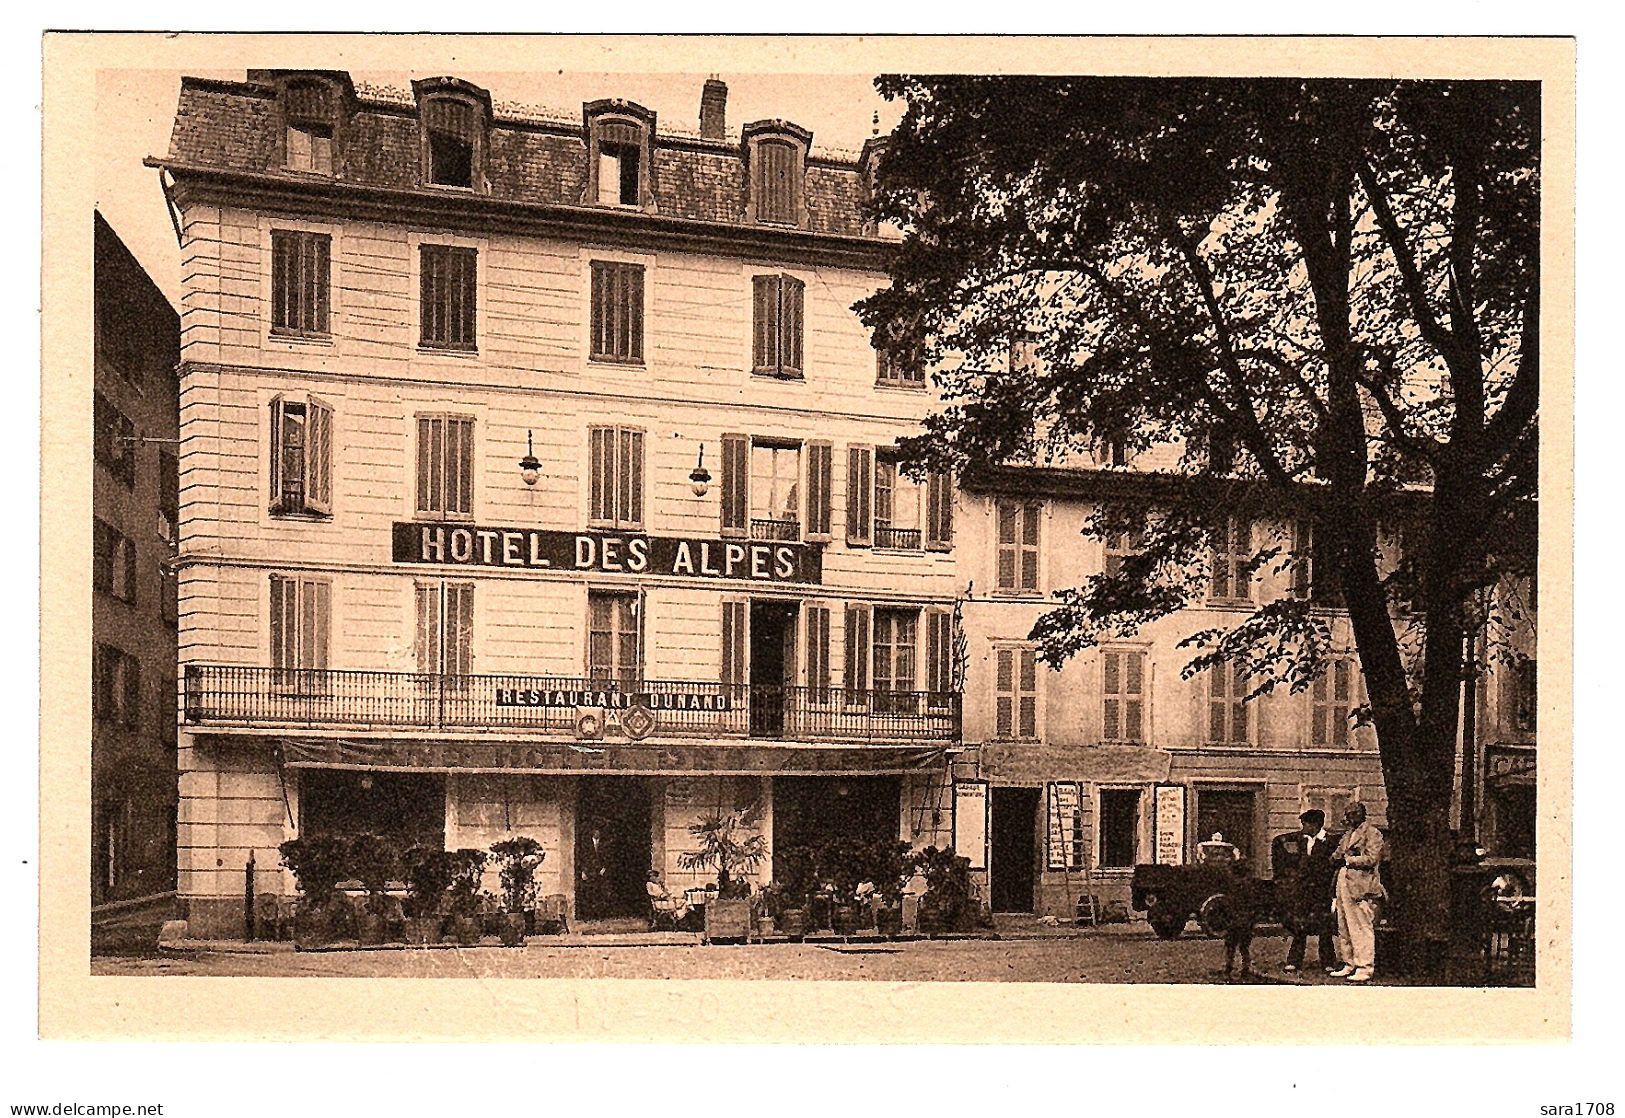 04 BARCELONNETTE, Hôtel Des Alpes. DUNAND Propriétaire. édition Hôtel Des Alpes. - Barcelonnette